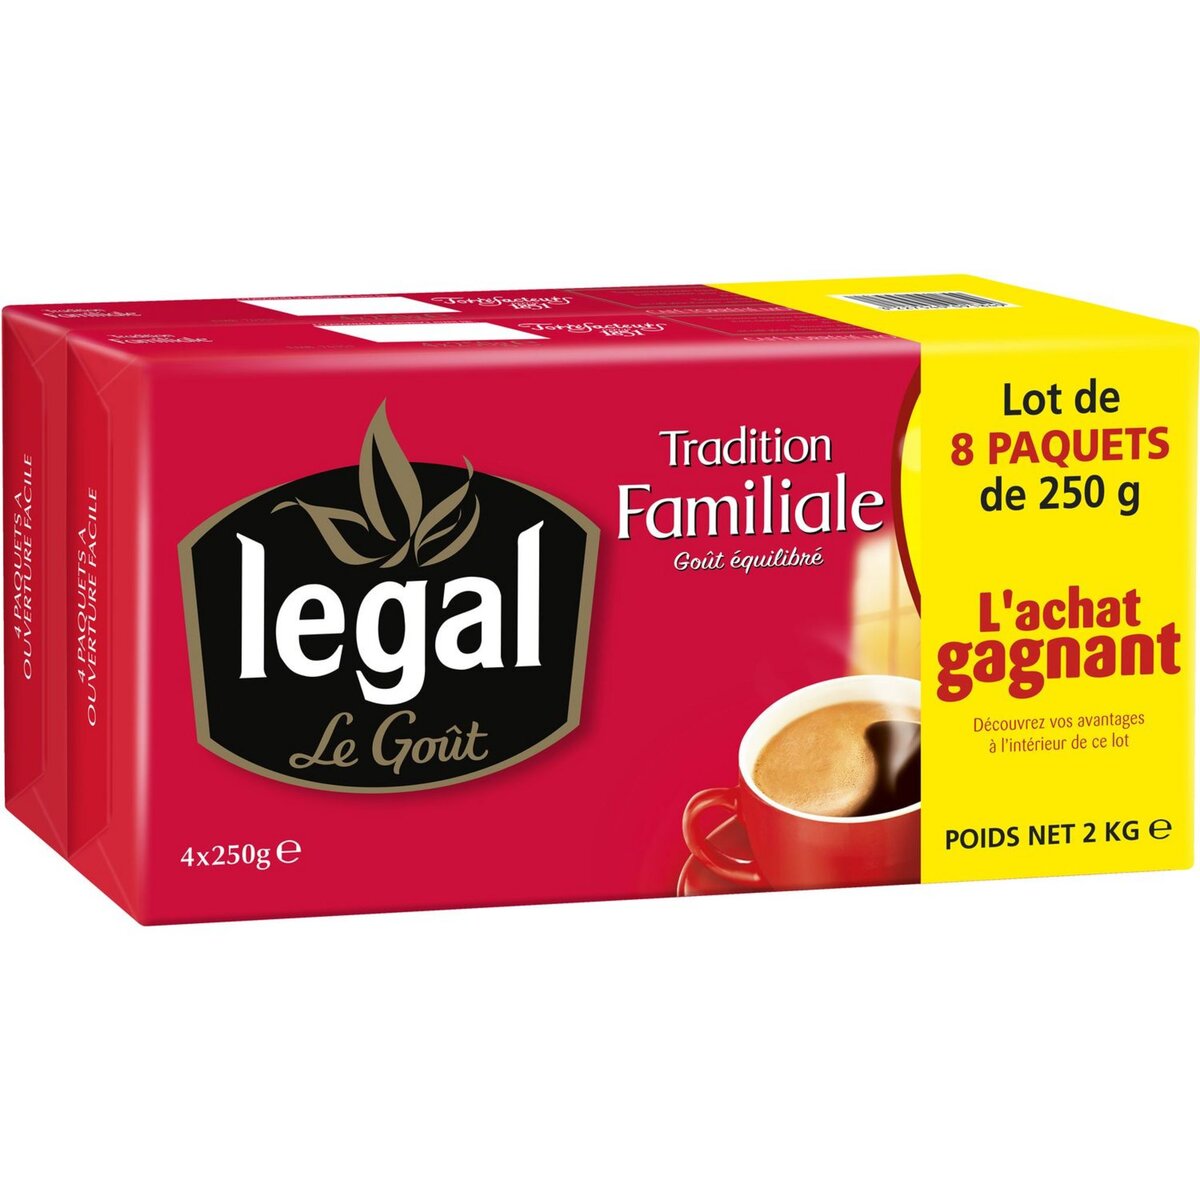 LEGAL Legal Café moulu prestige et tradition 8x250g 8x250g pas cher 